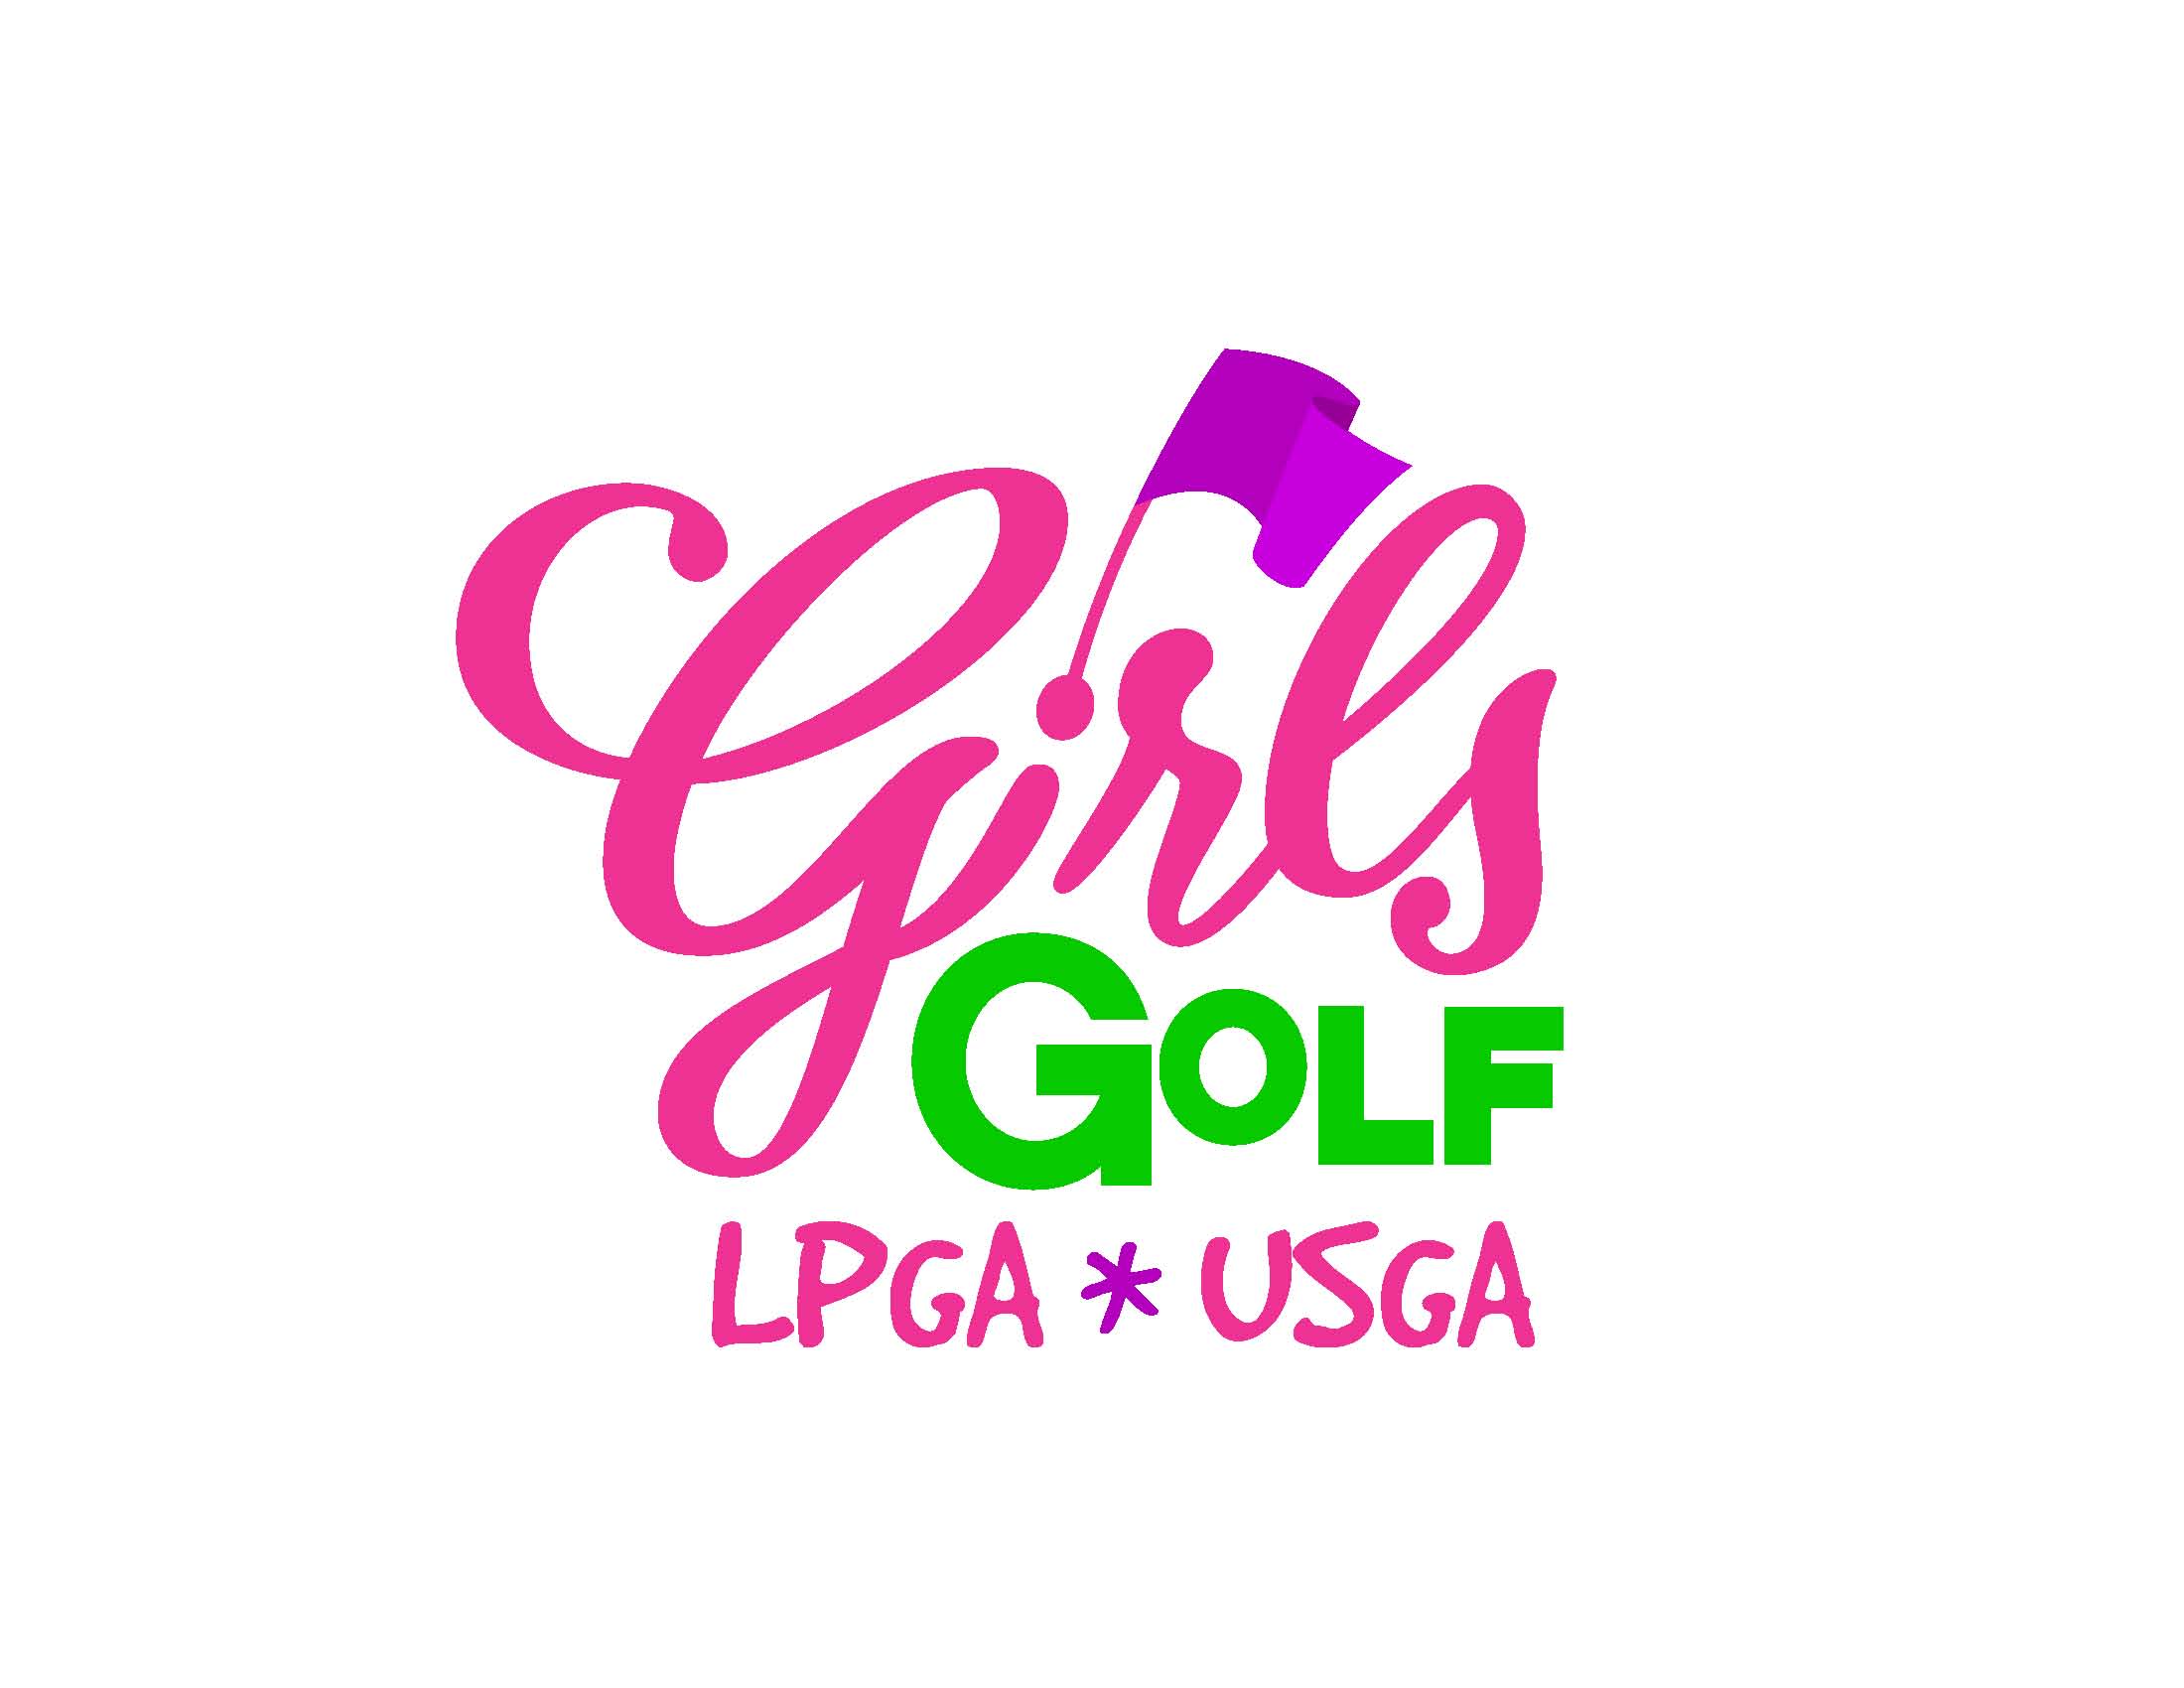 LPGA*USGA Girls Golf Logo